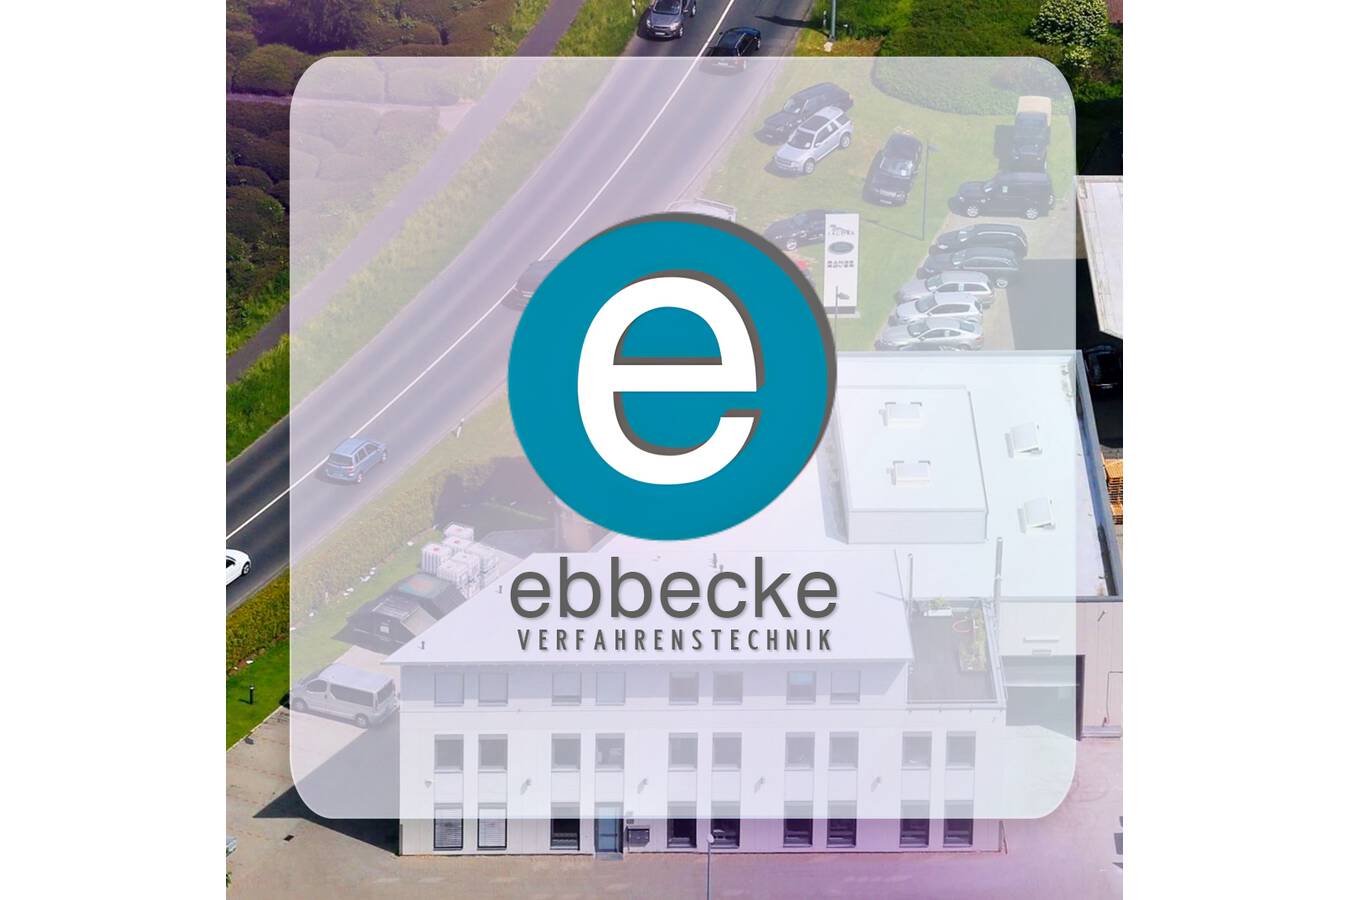 A. Ebbecke Verfahrenstechnik sucht Mitarbeiter Bilanzbuchhaltung m/w/d in Vollzeit 40 Std.